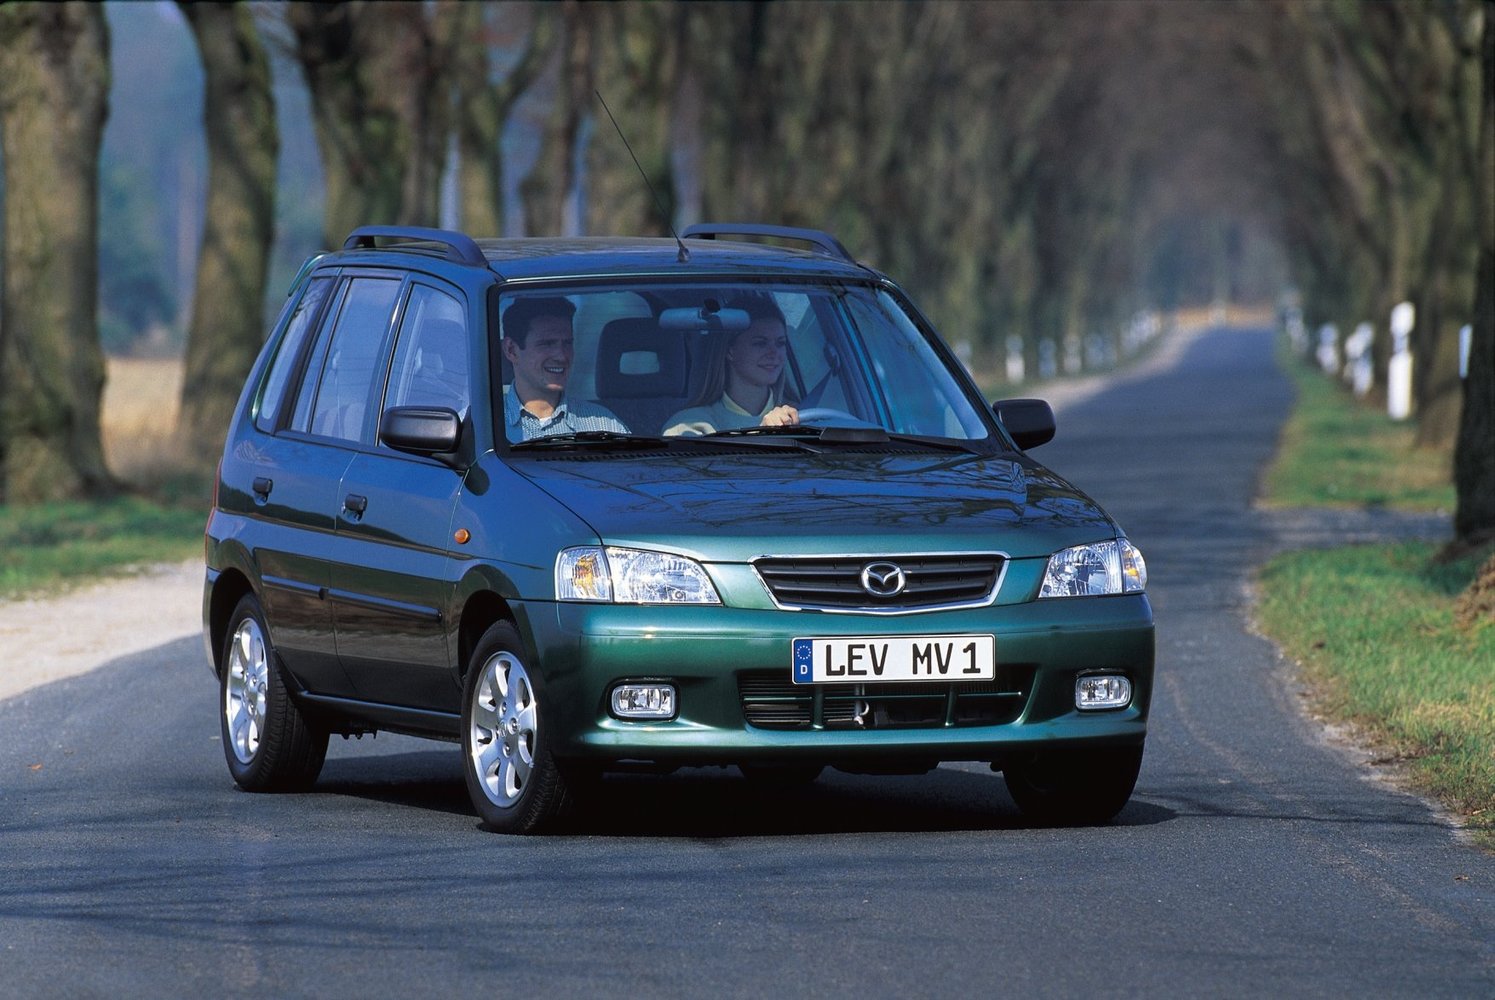 хэтчбек 5 дв. Mazda Demio 1996 - 2002г выпуска модификация 1.3 AT (63 л.с.)